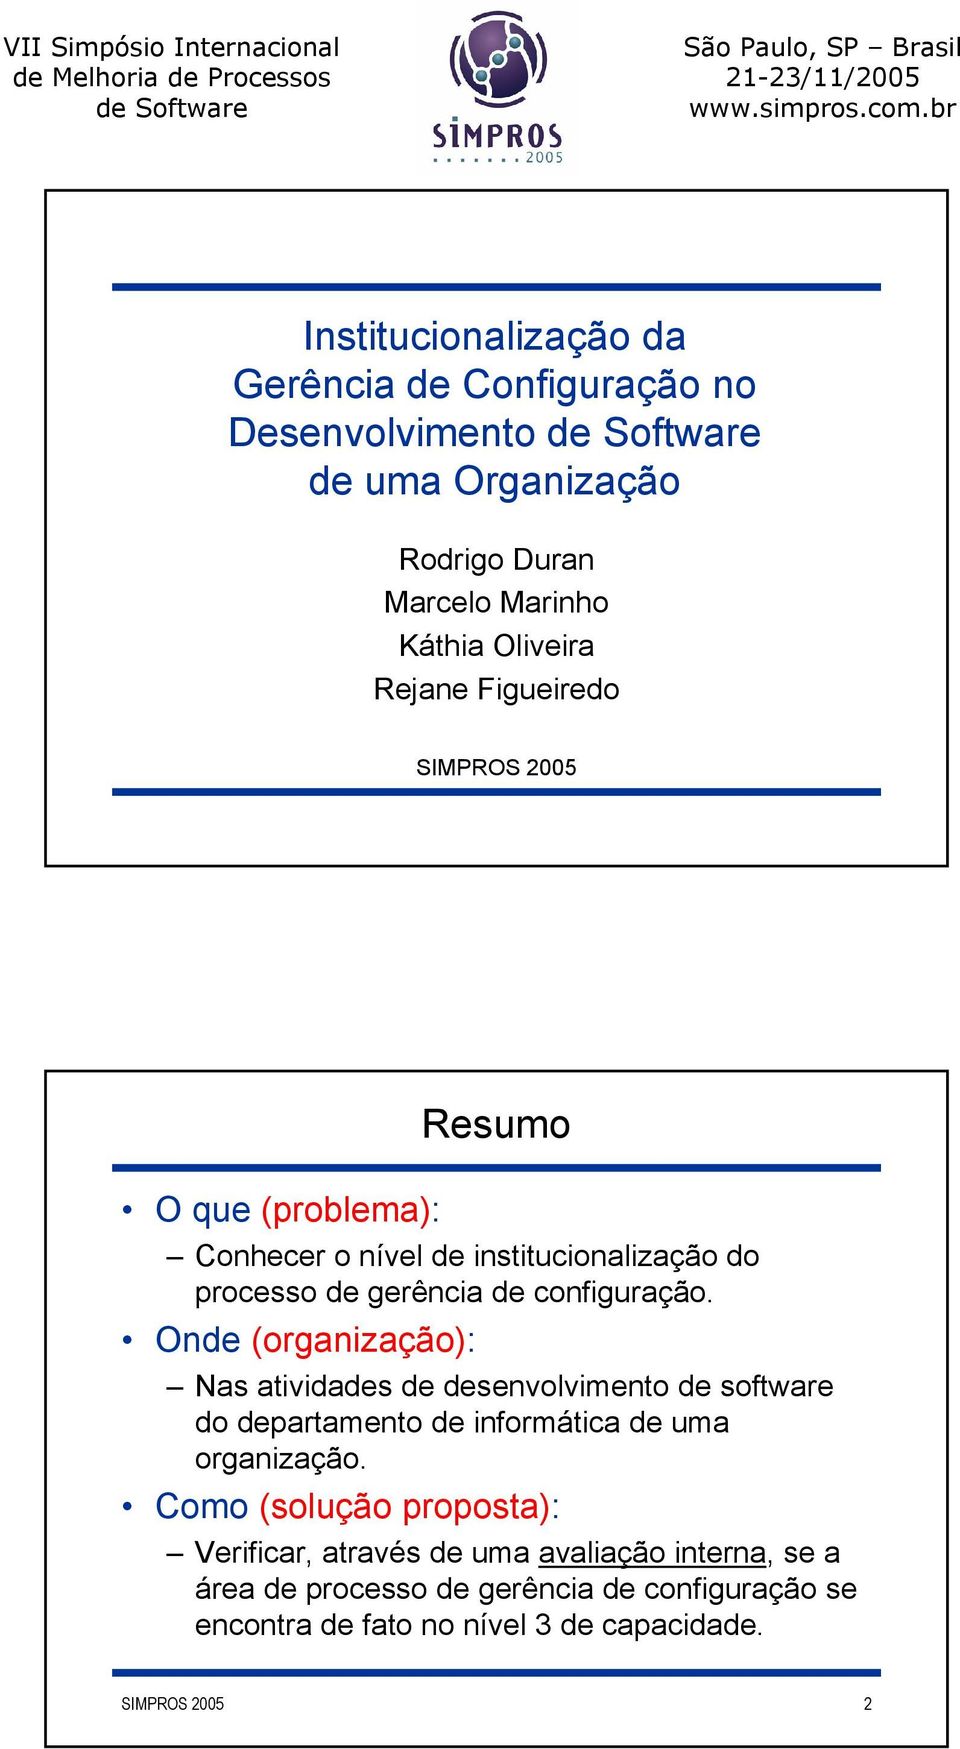 Onde (organização): Nas atividades de desenvolvimento de software do departamento de informática de uma organização.